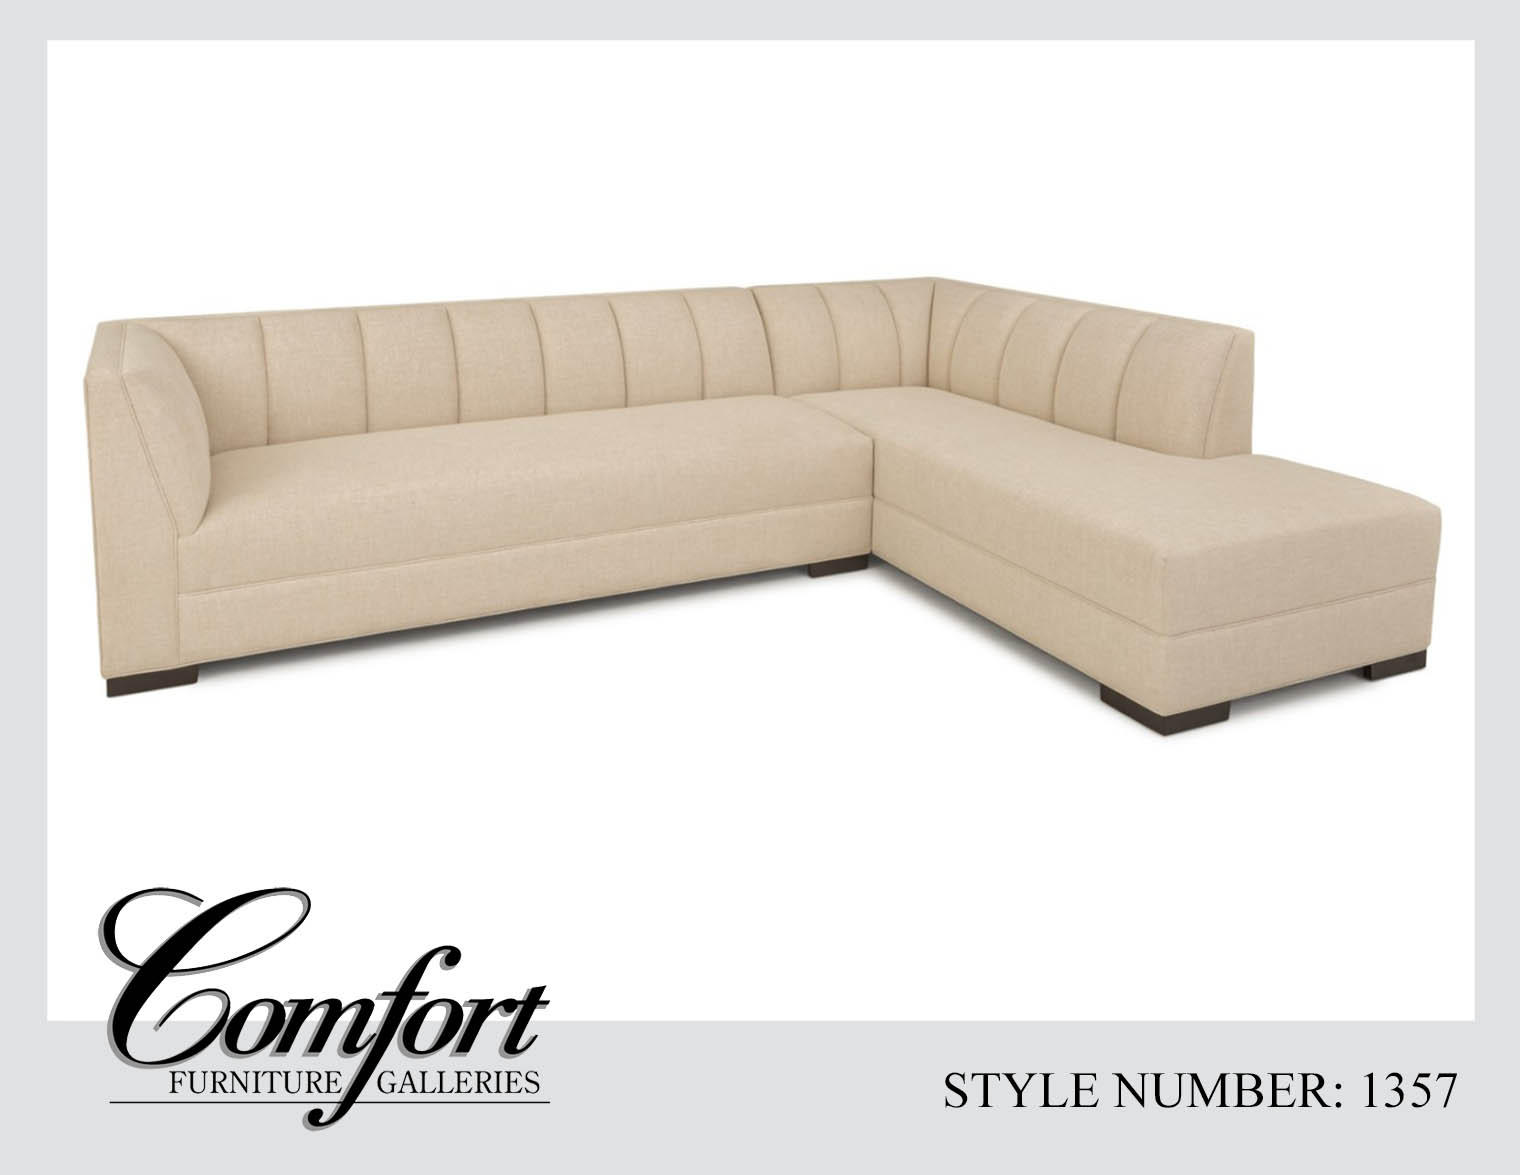 Comfort Furniture Galleries San Diego (858)549-9990